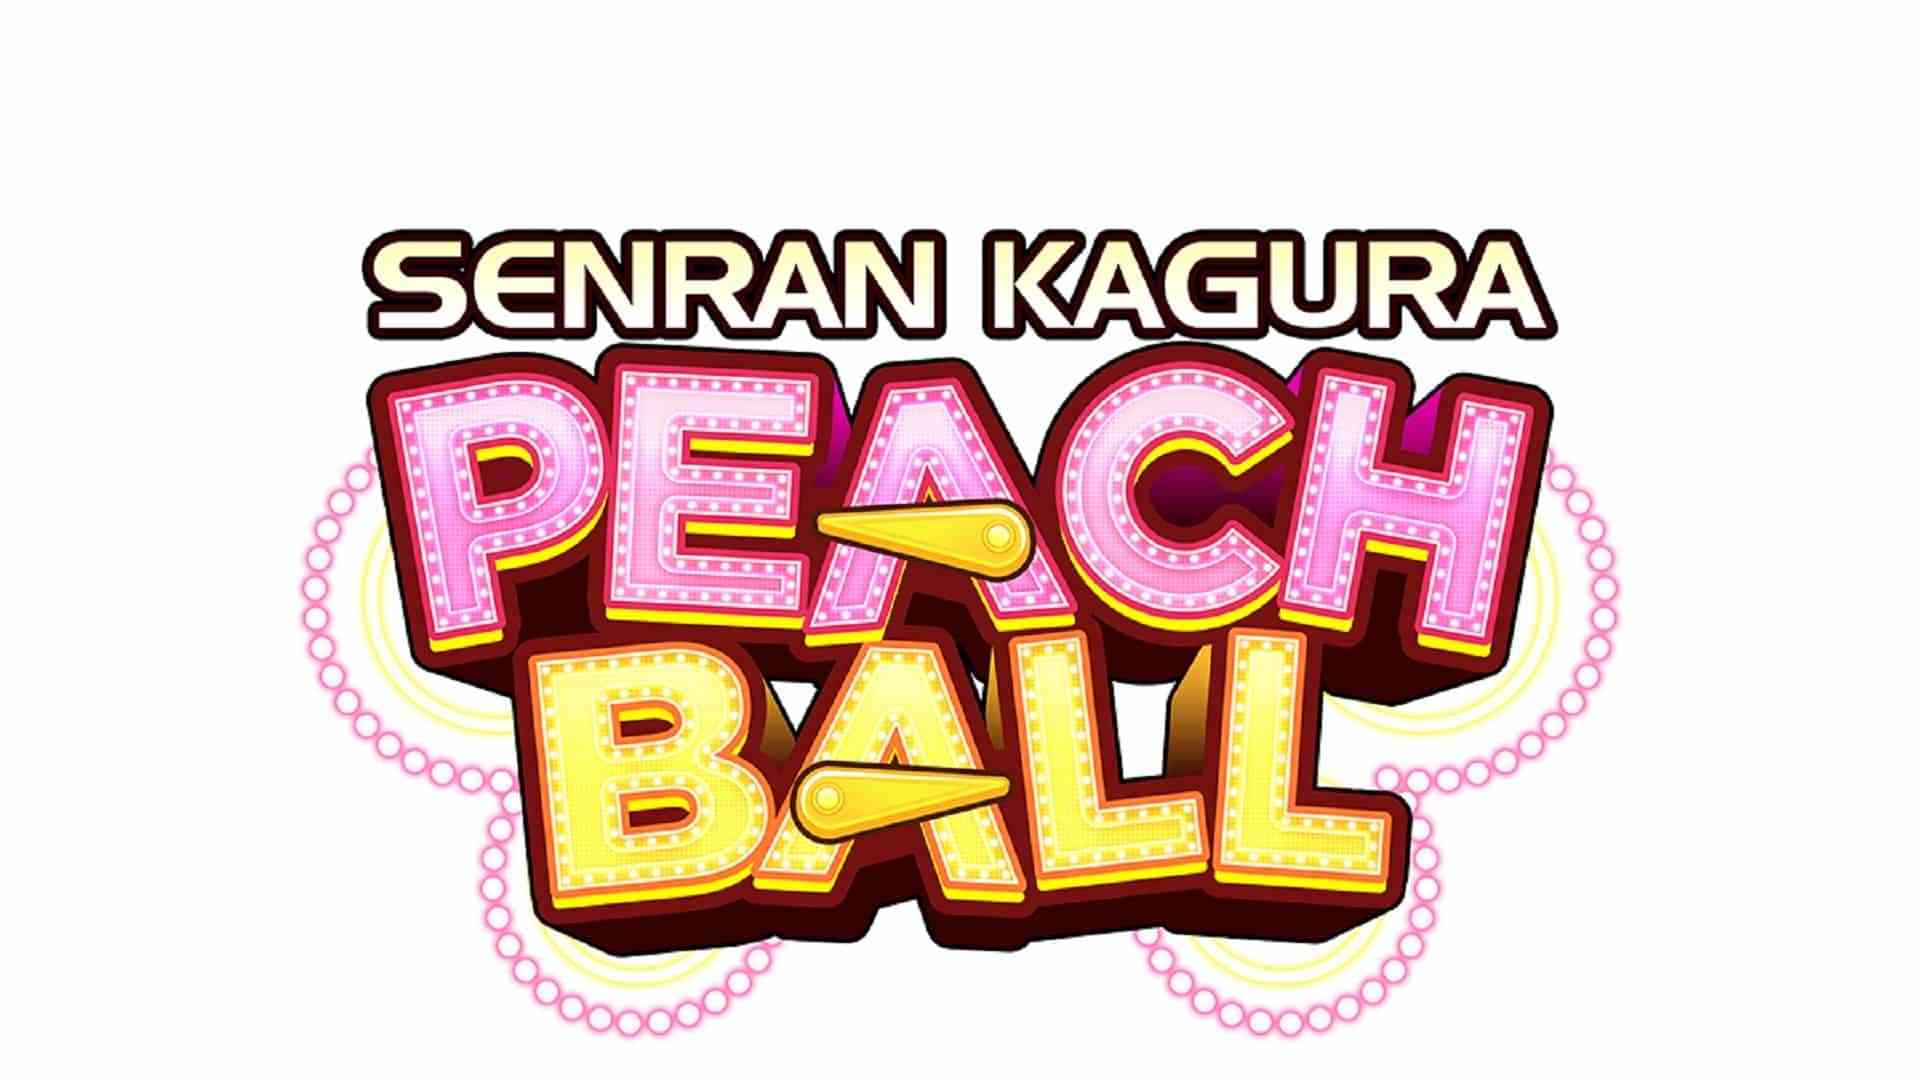 SENRAN KAGURA: PEACH BALL PC Review: The Same Sexy Pinball Found